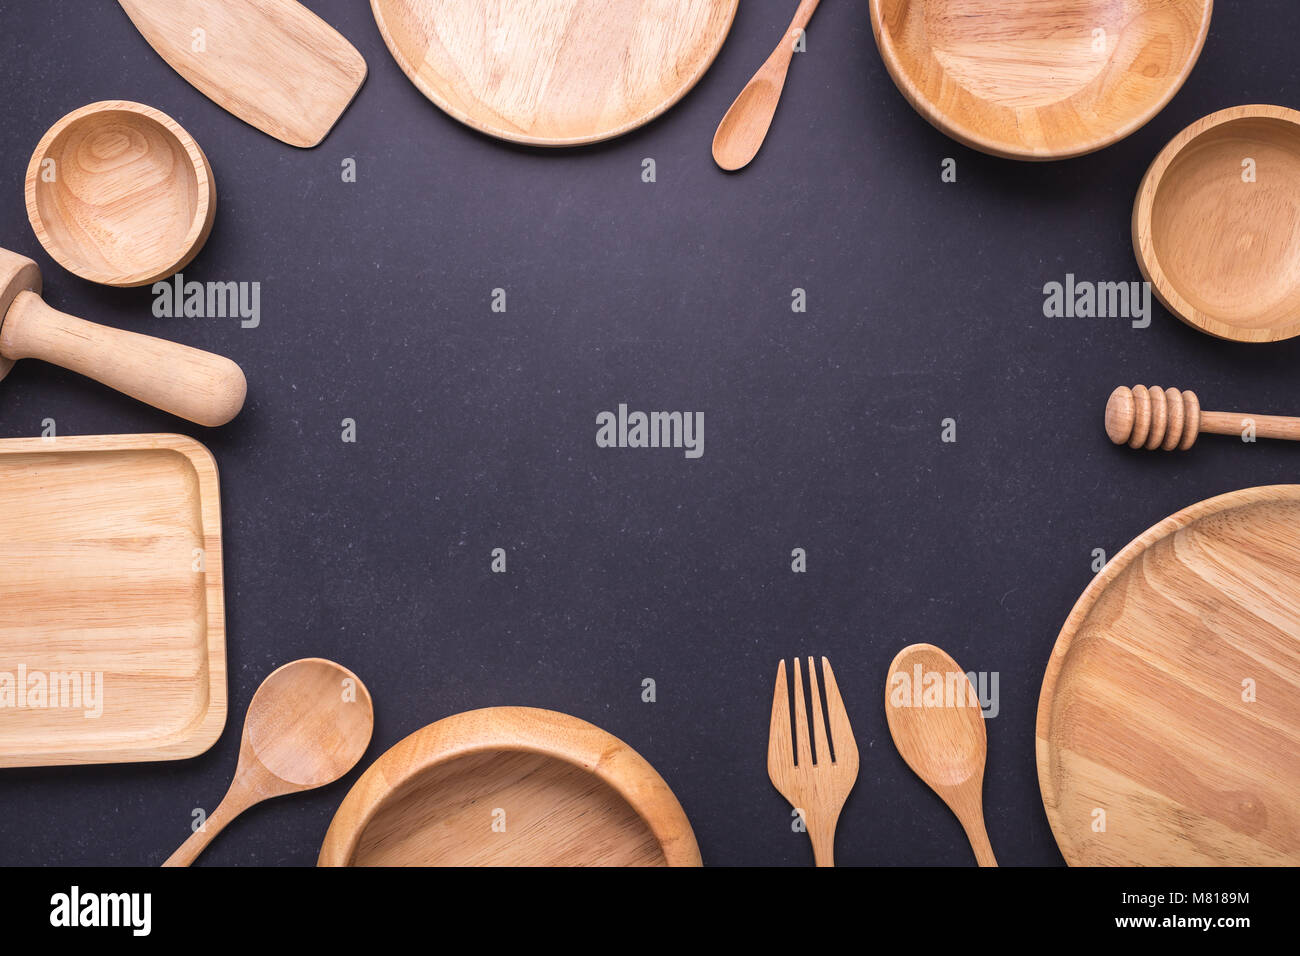 Nouvelle collection de ustensile de cuisine en bois, bol, assiette, cuillère, assiette. Studio shot sur arrière-plan du tableau noir. Avec de l'espace libre pour le texte ou dessin Banque D'Images